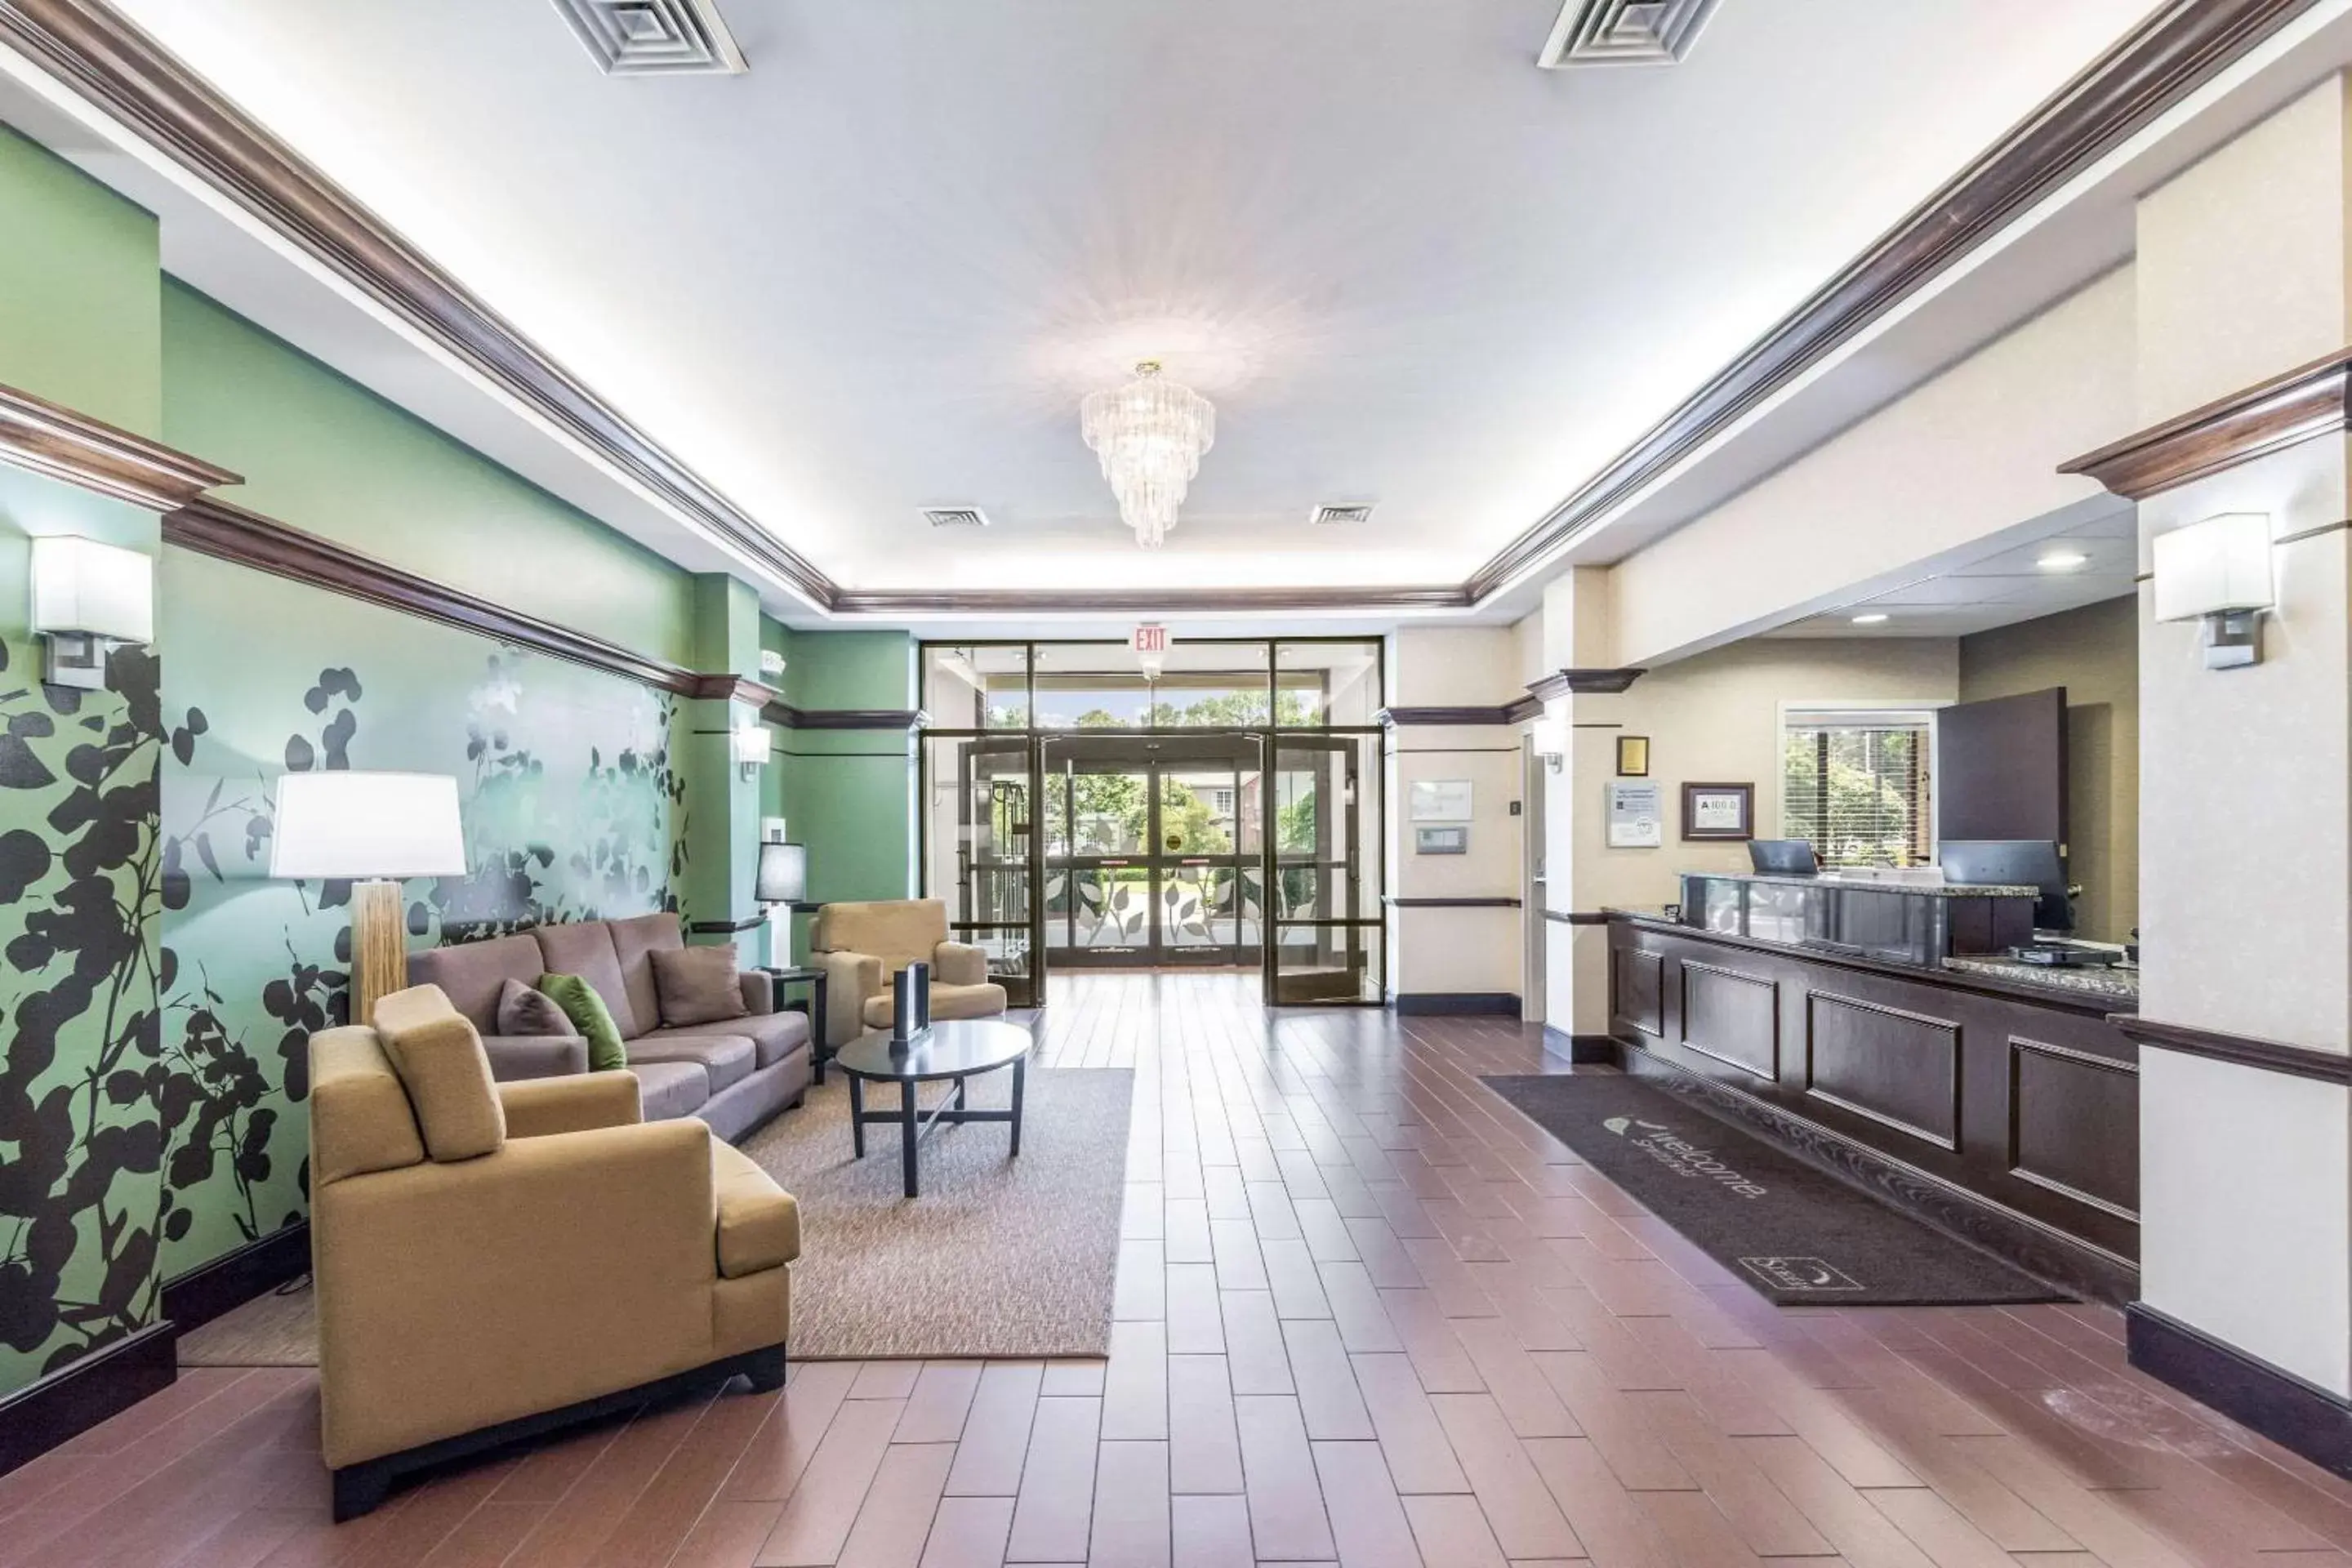 Lobby or reception in Sleep Inn & Suites Smithfield near I-95